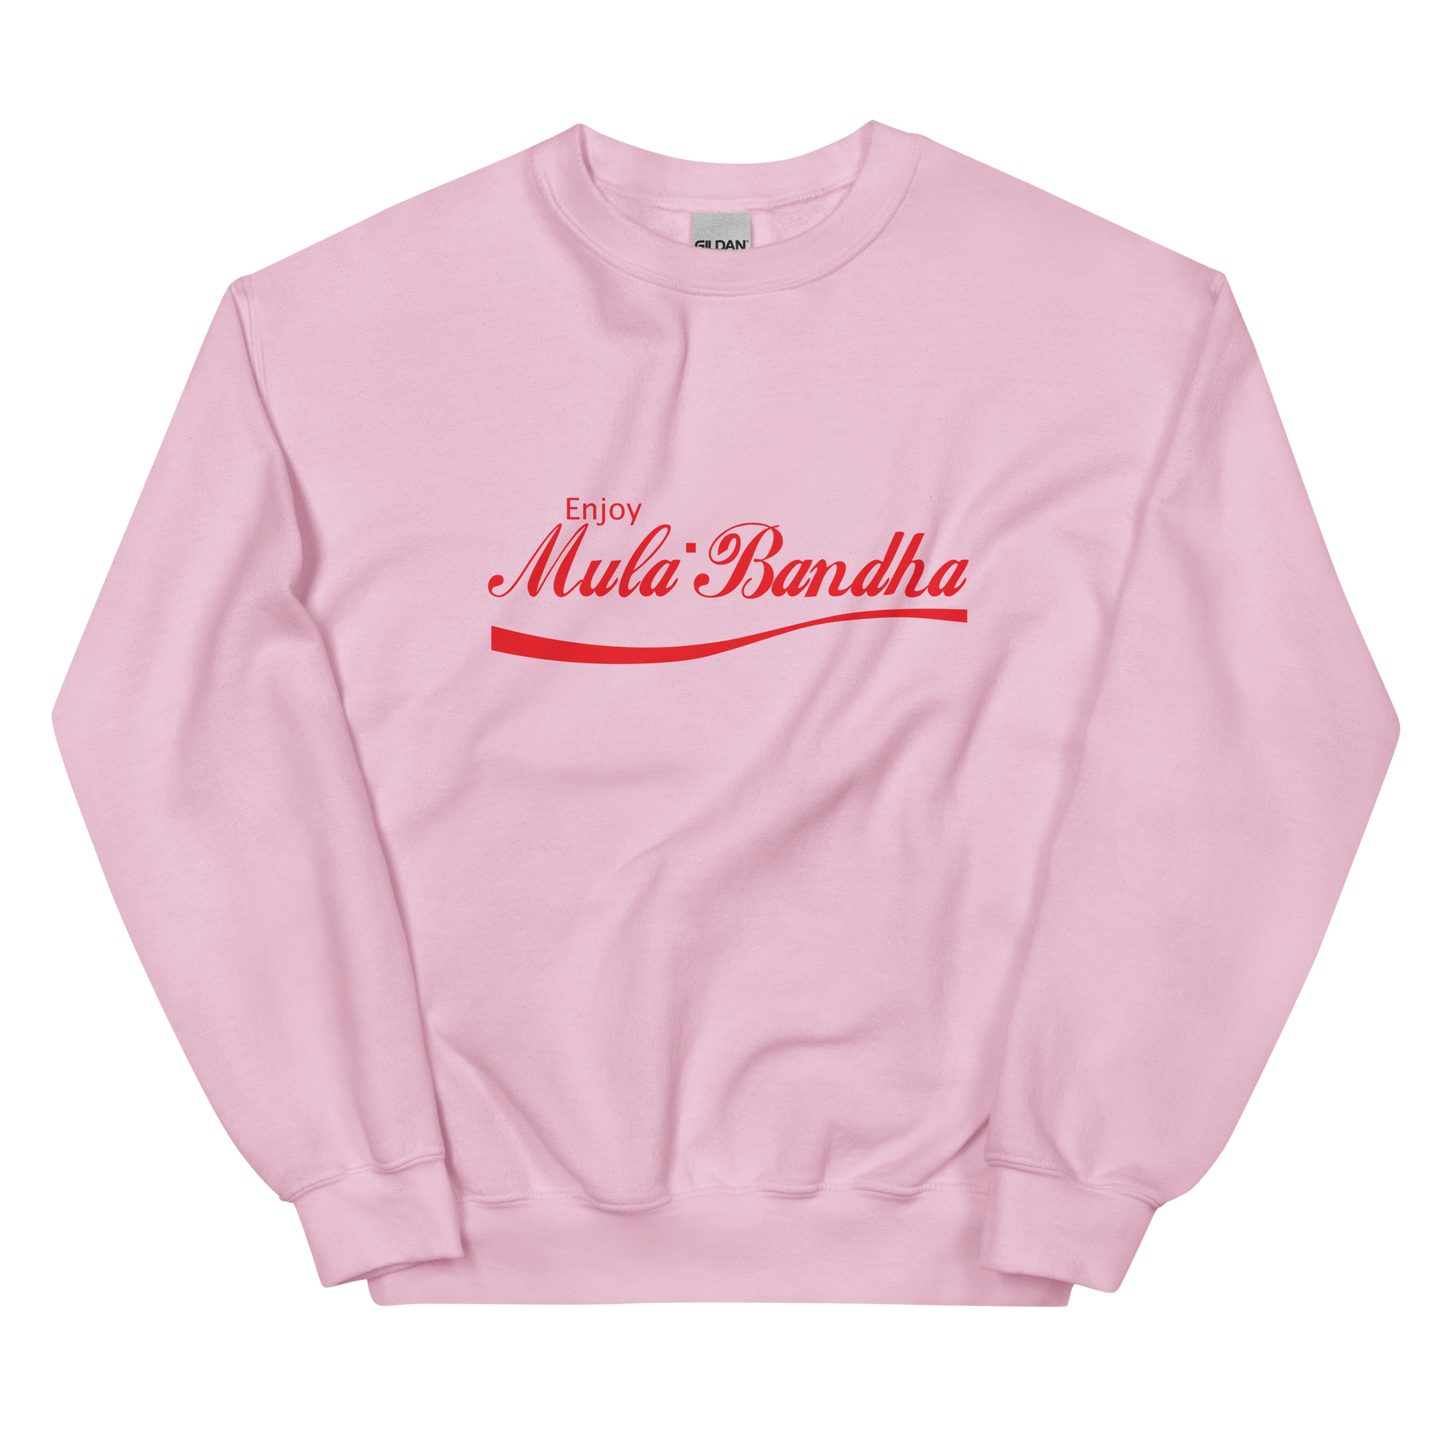 Enjoy Mula Bandha Graphic Sweatshirt